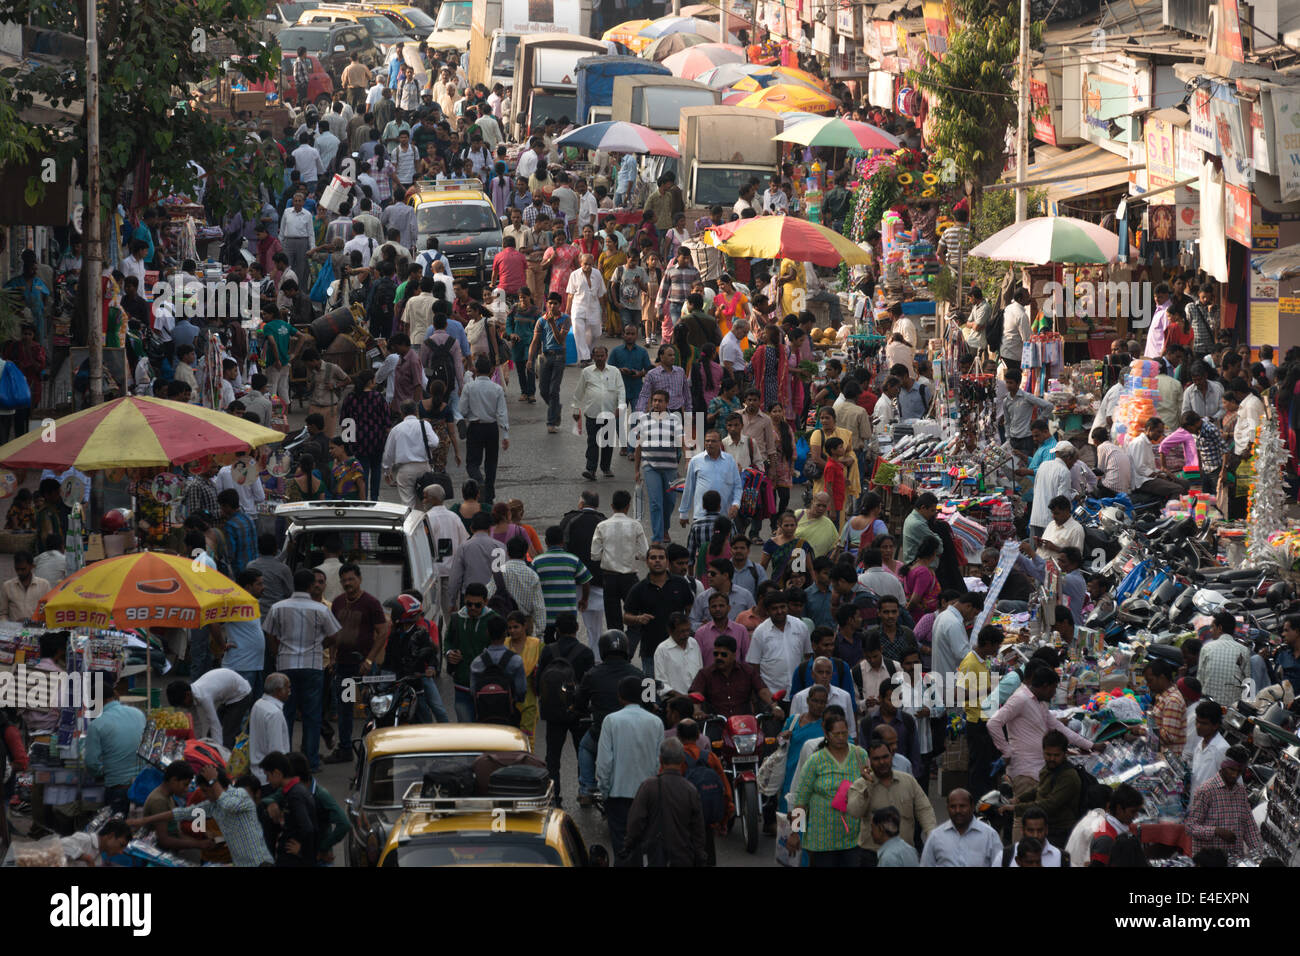 MUMBAI, India - 17 de enero de 2014: Un gran grupo de personas en las calles congestionadas en Dadar, Mumbai. Foto de stock